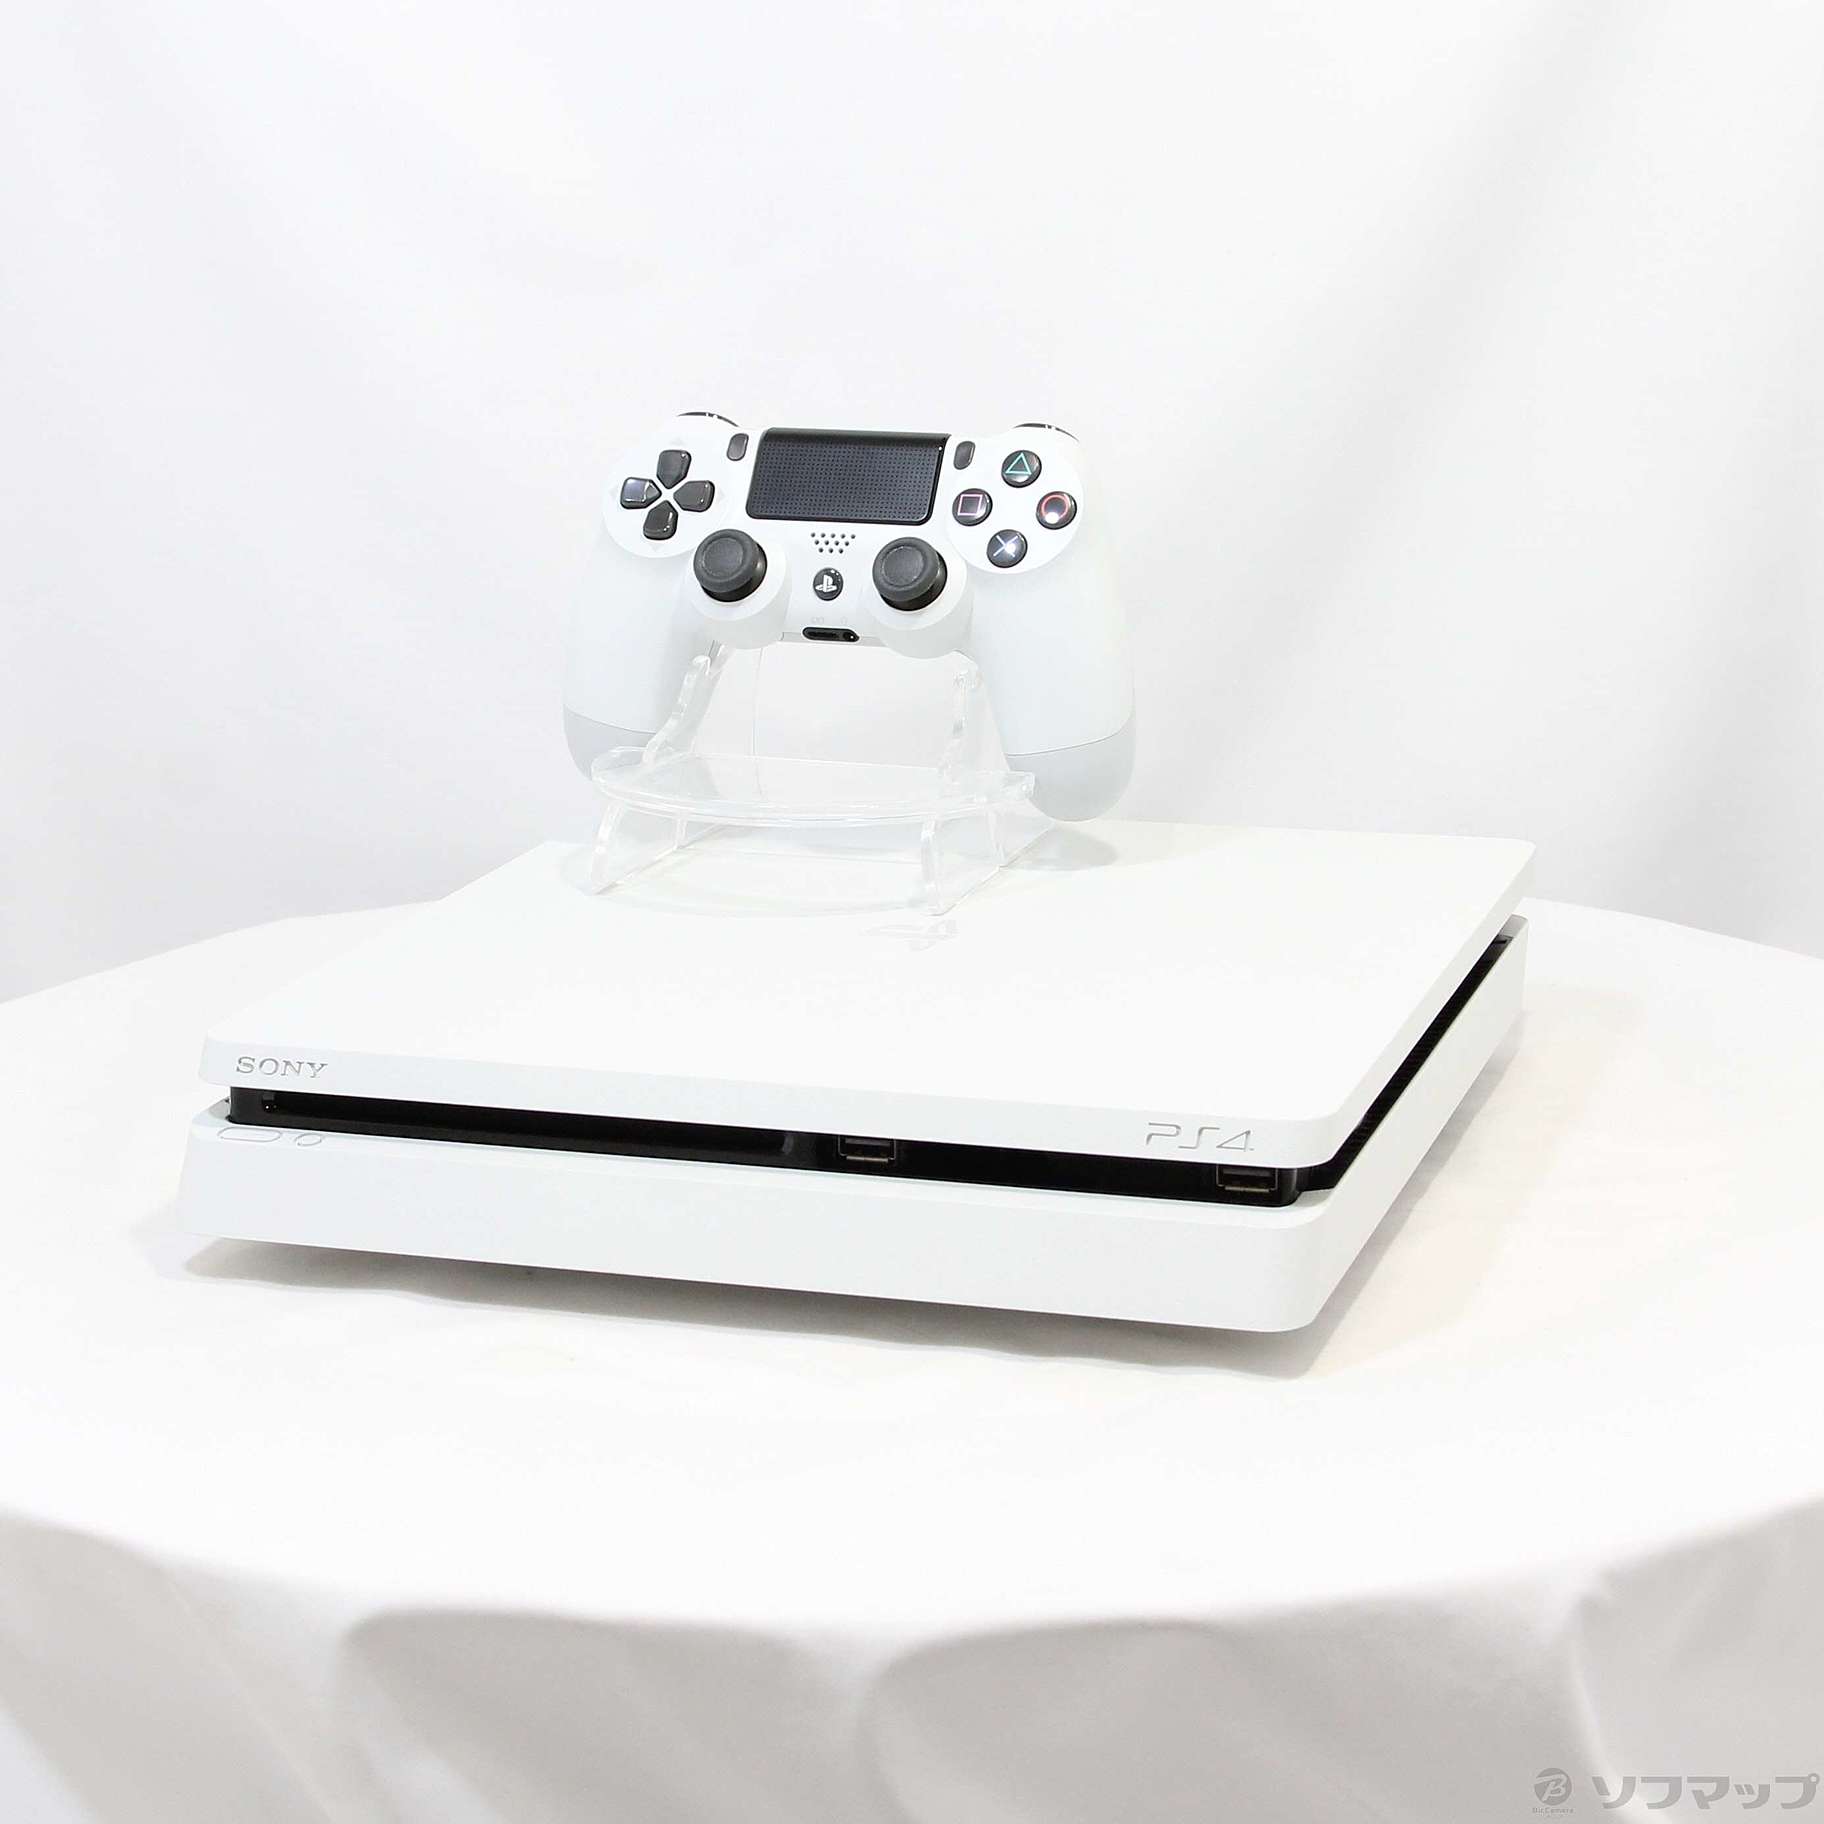 中古】PlayStation 4 グレイシャー・ホワイト 500GB ◇12/23(金)値下げ